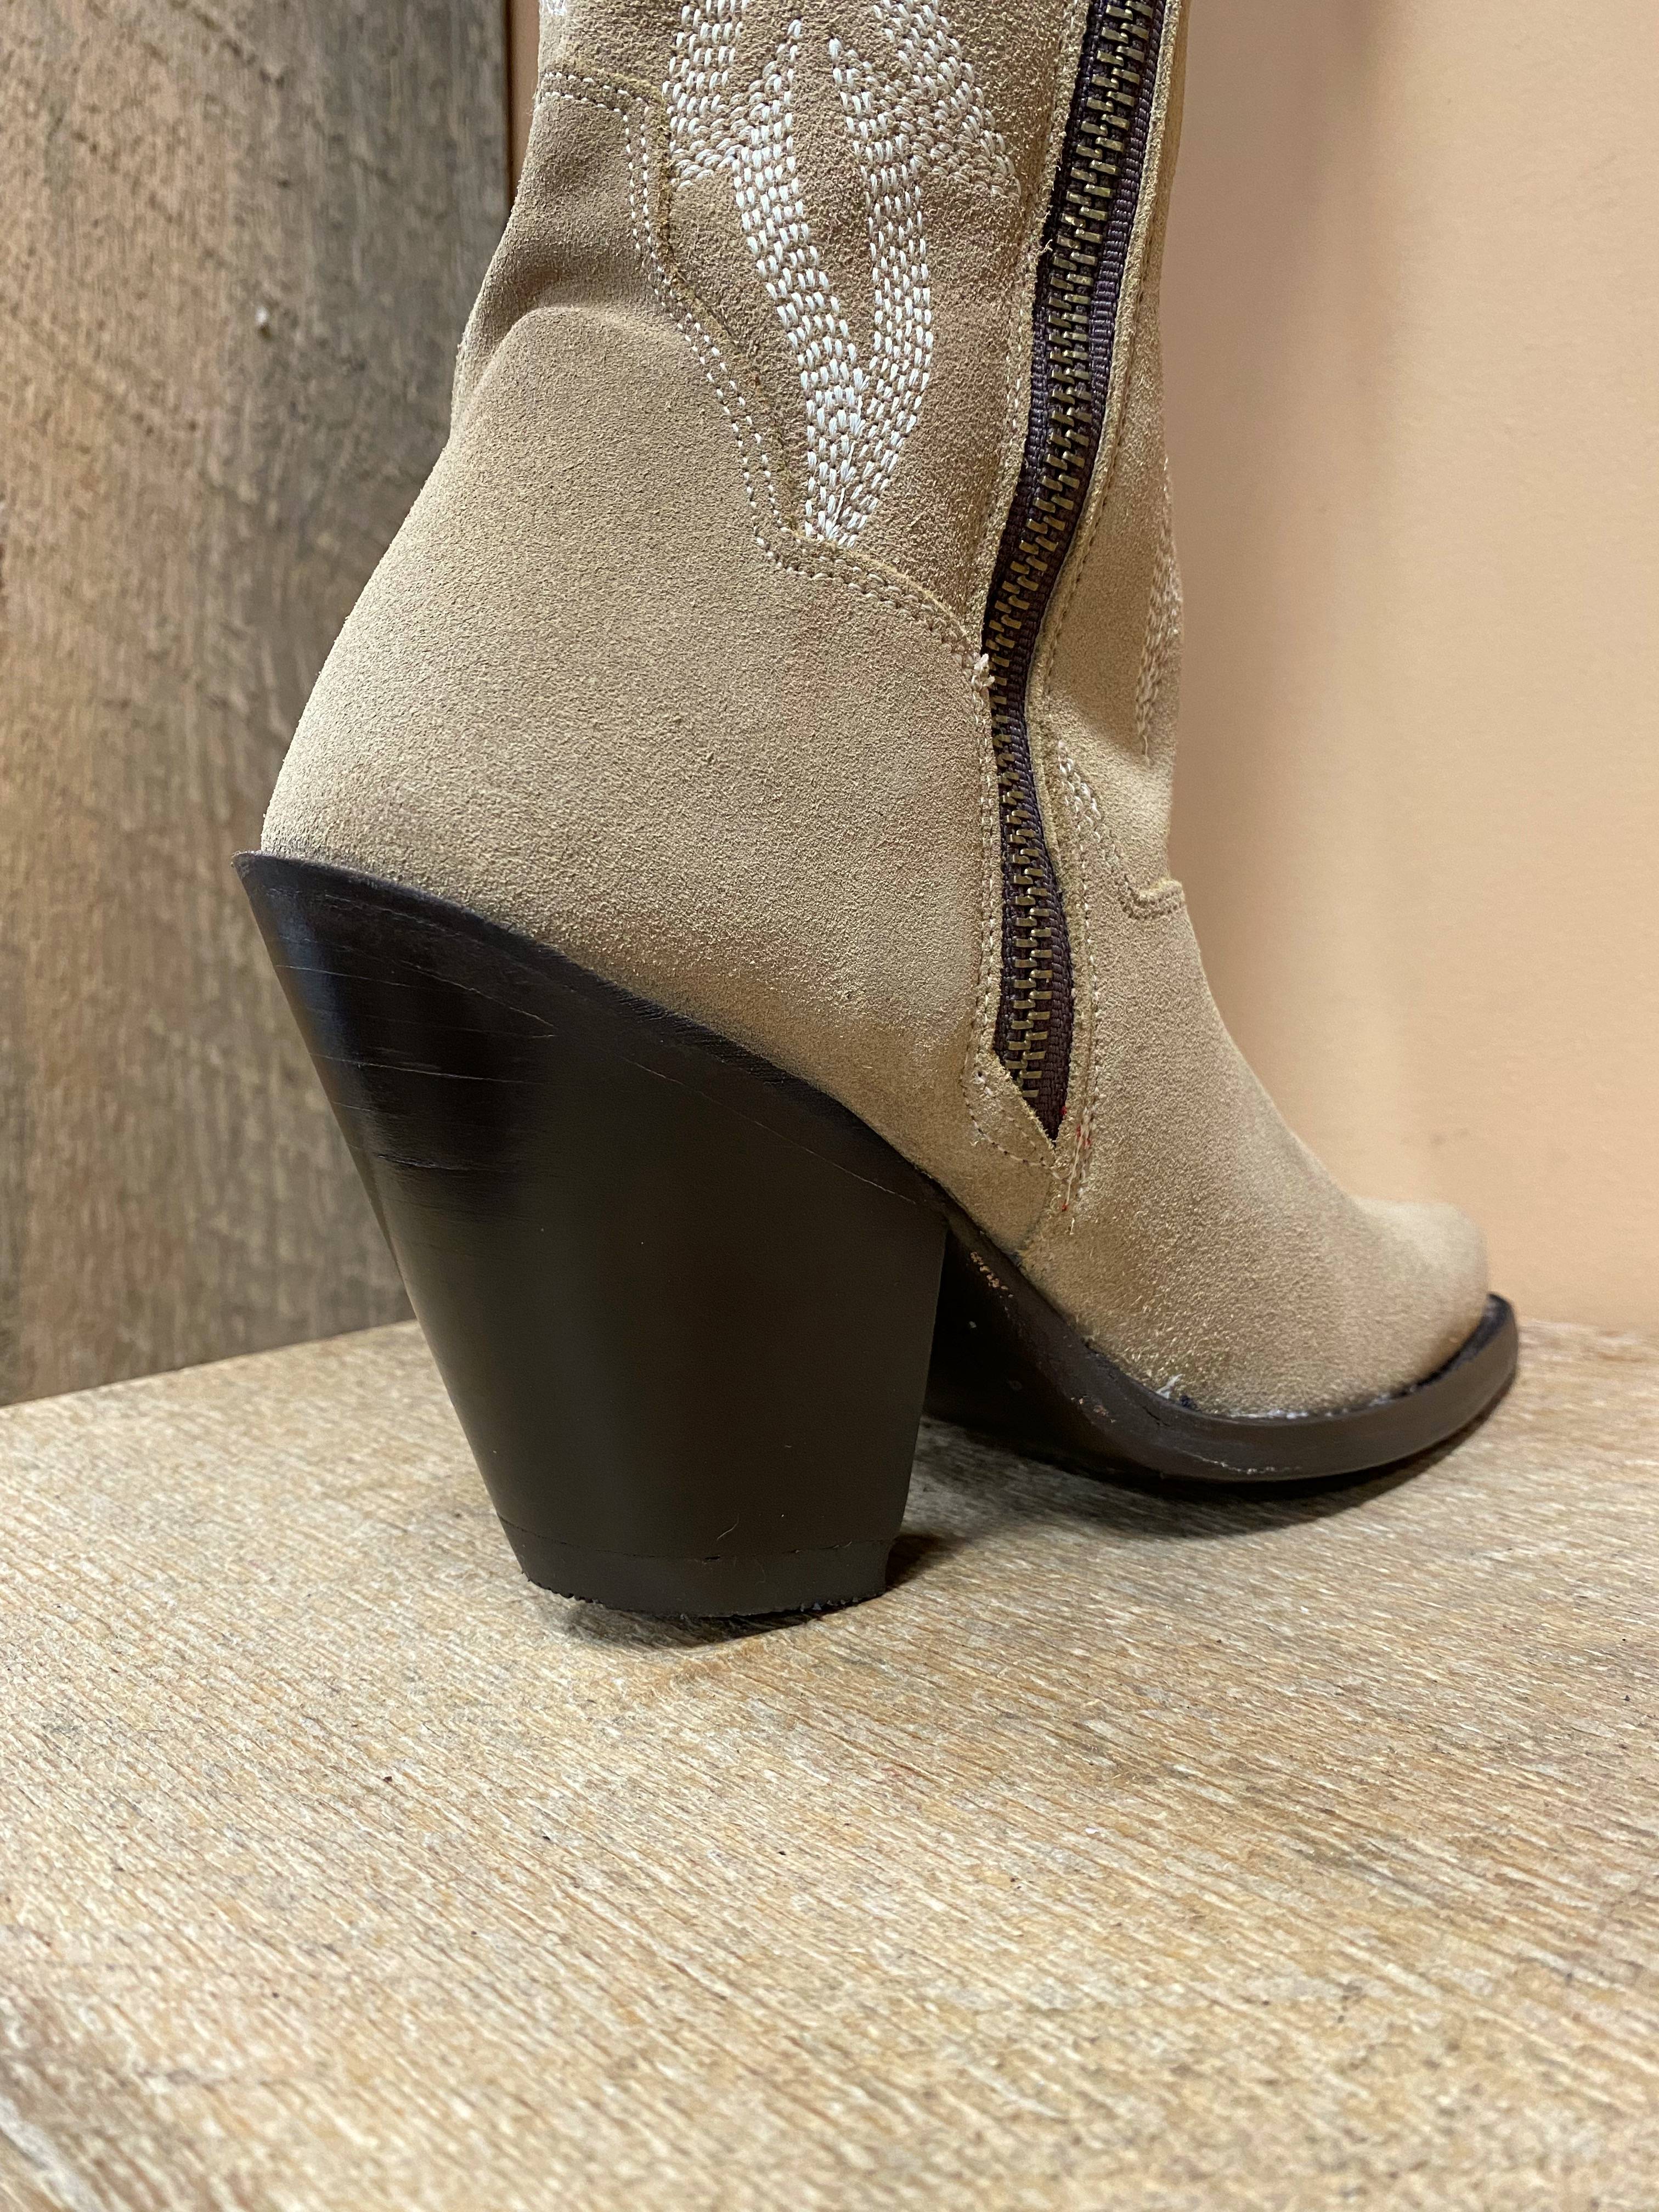 DAN POST – Women’s Jilted Knee High Western / Fashion Boot( Beige Suede ...